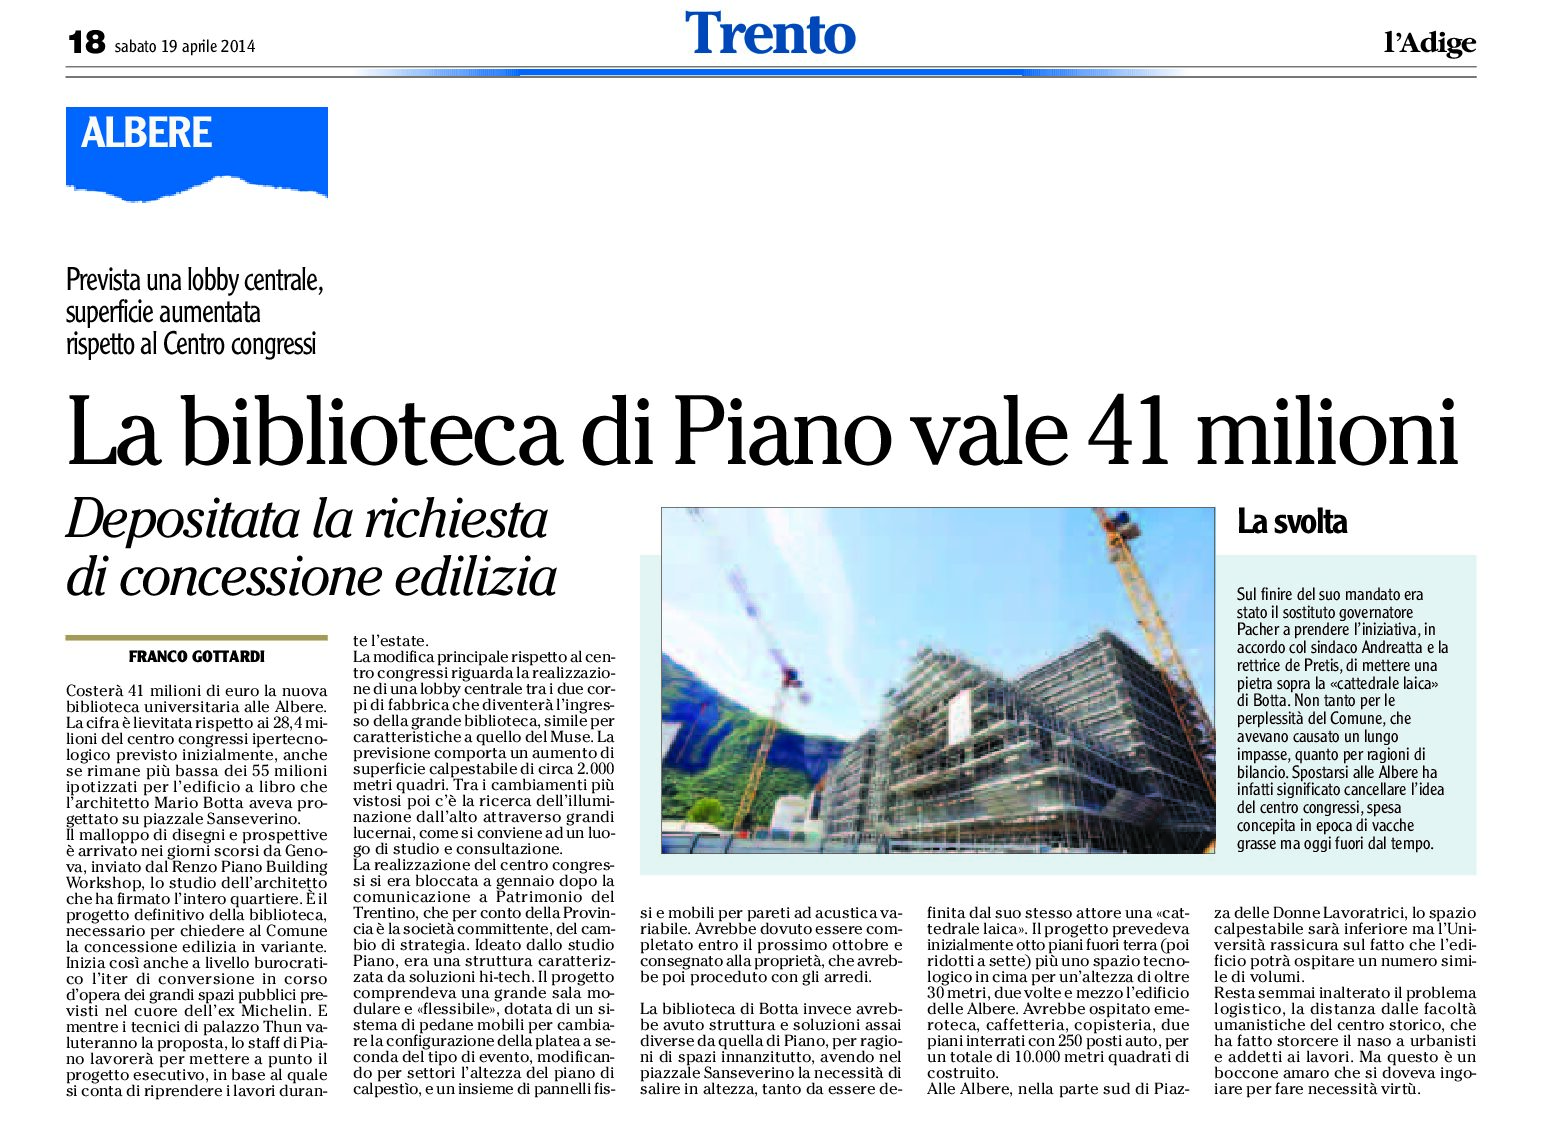 Trento: la biblioteca di Piano vale 41 milioni. Depositata la richiesta di concessione edilizia